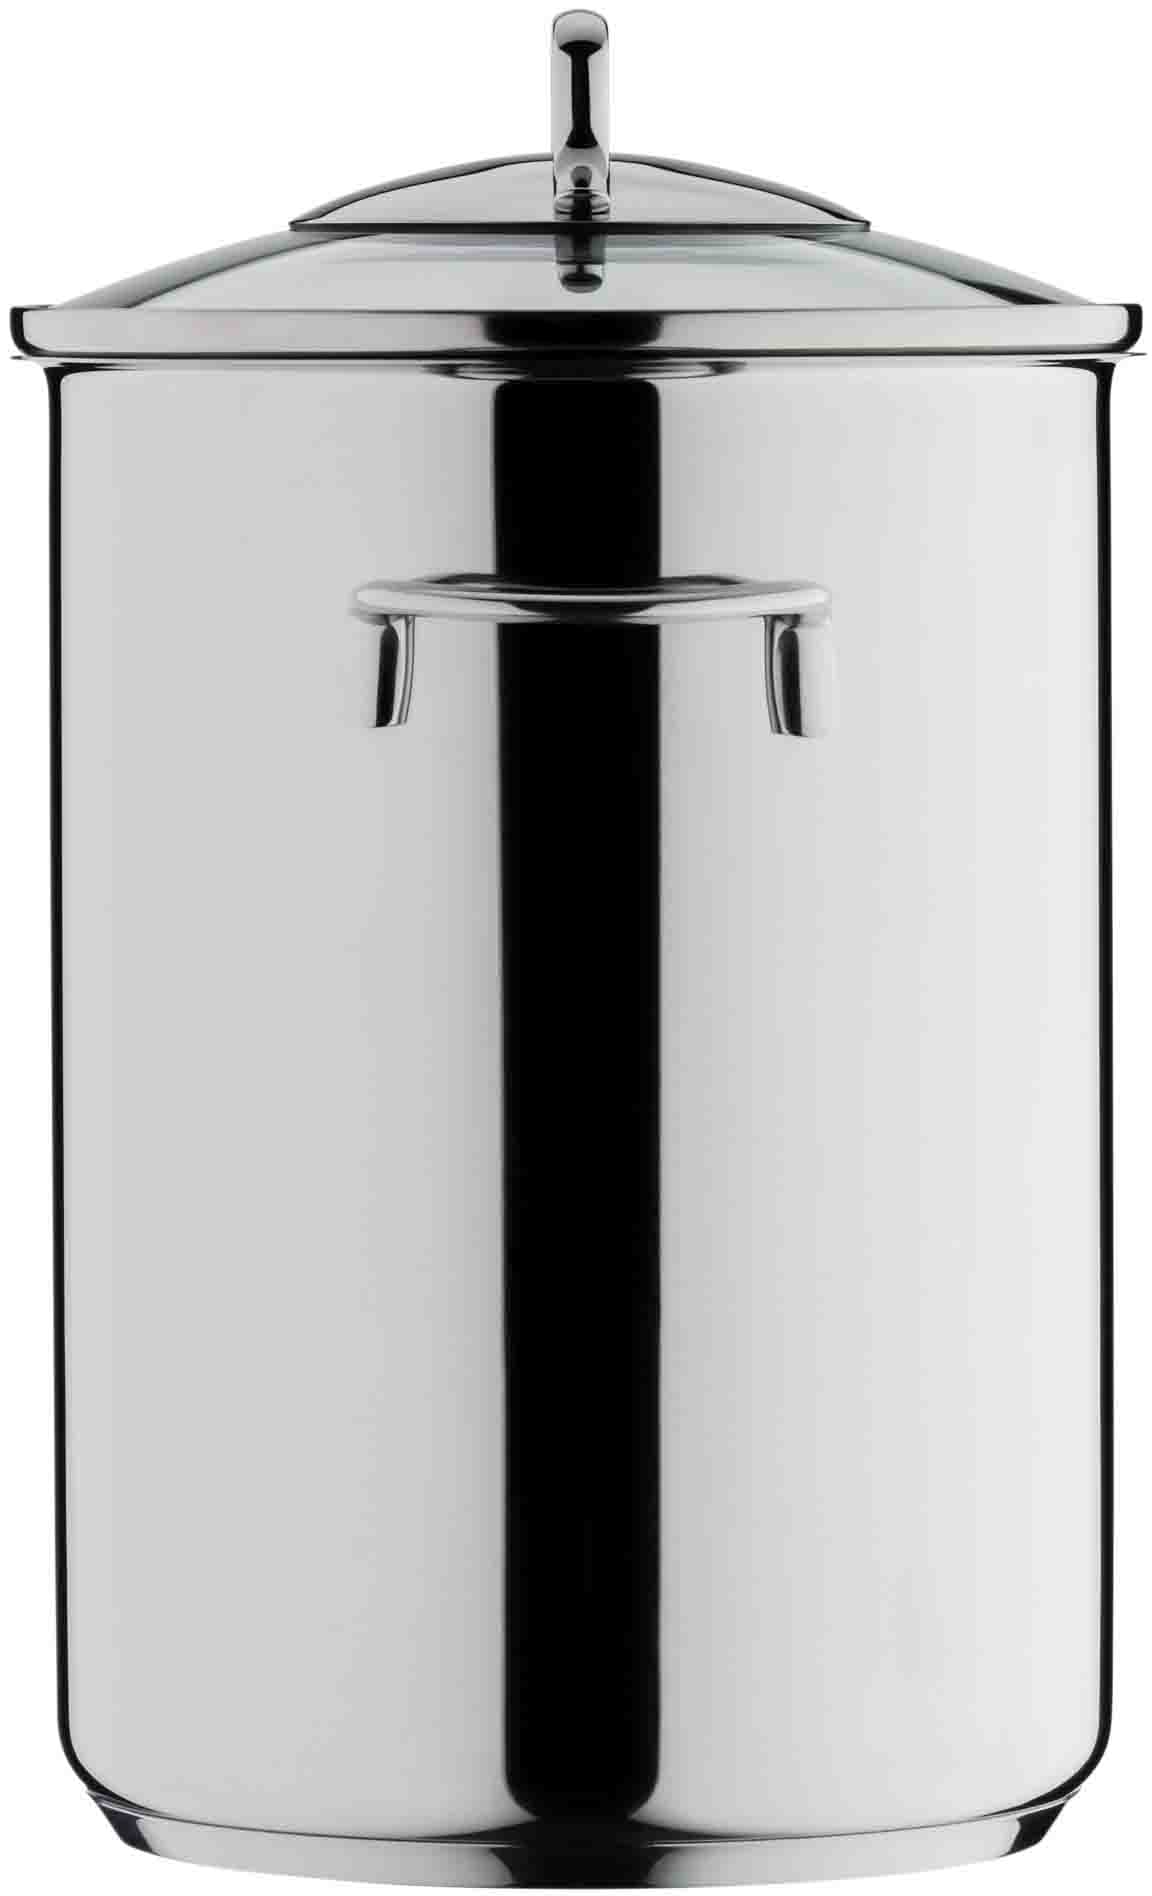 WMF Spargeltopf, Cromargan® Edelstahl Rostfrei 18/10, Ø 16 cm, mit Siebeinsatz, Induktion, 4,5 Liter